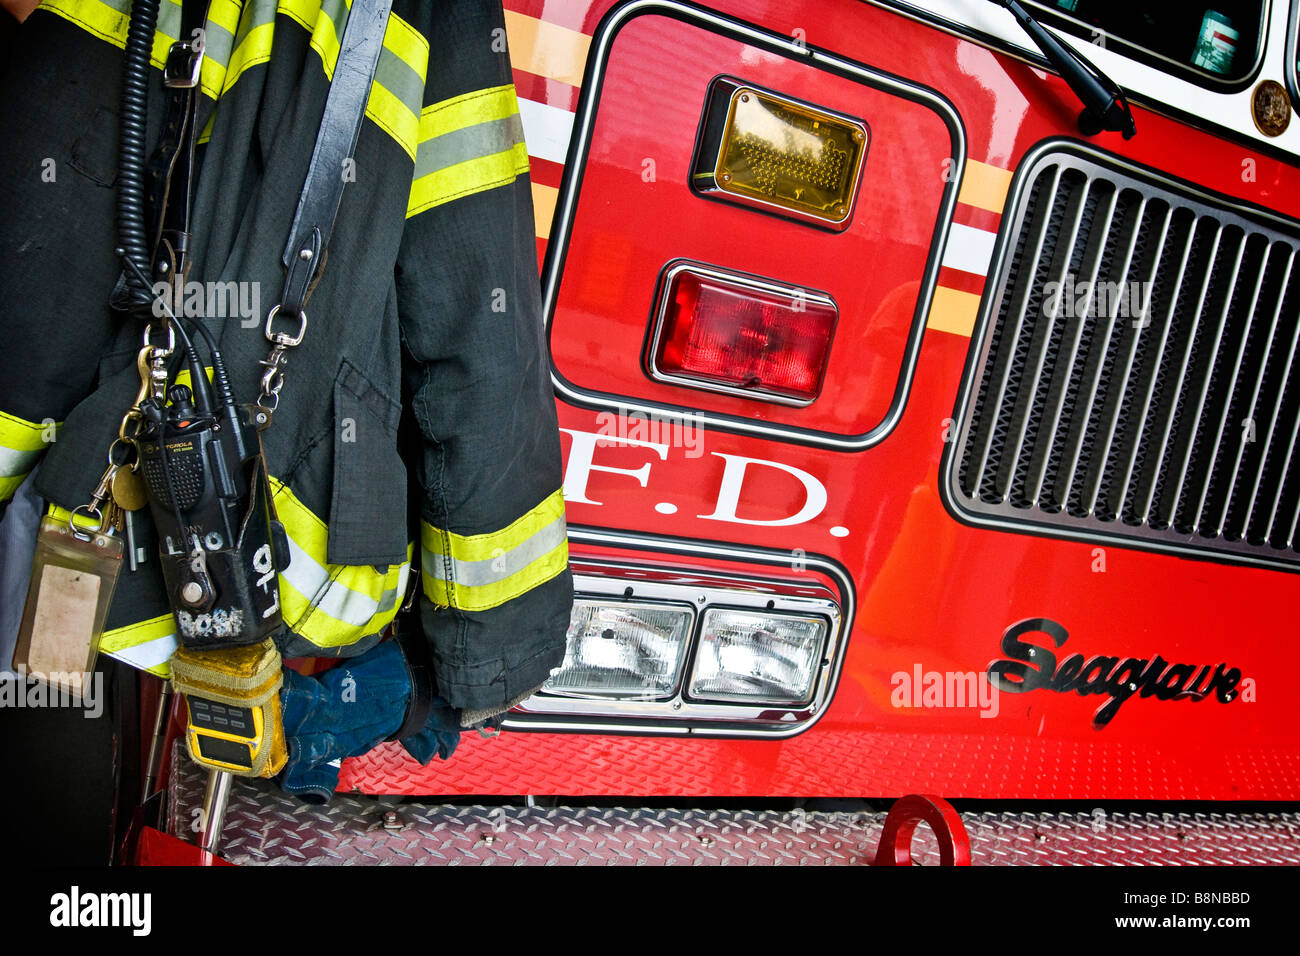 Abstrakt Front Feuerwehrauto und Feuerwehr Jacke mit Reflexstreifen, Tasten und zwei - Wege-Radio Stockfoto